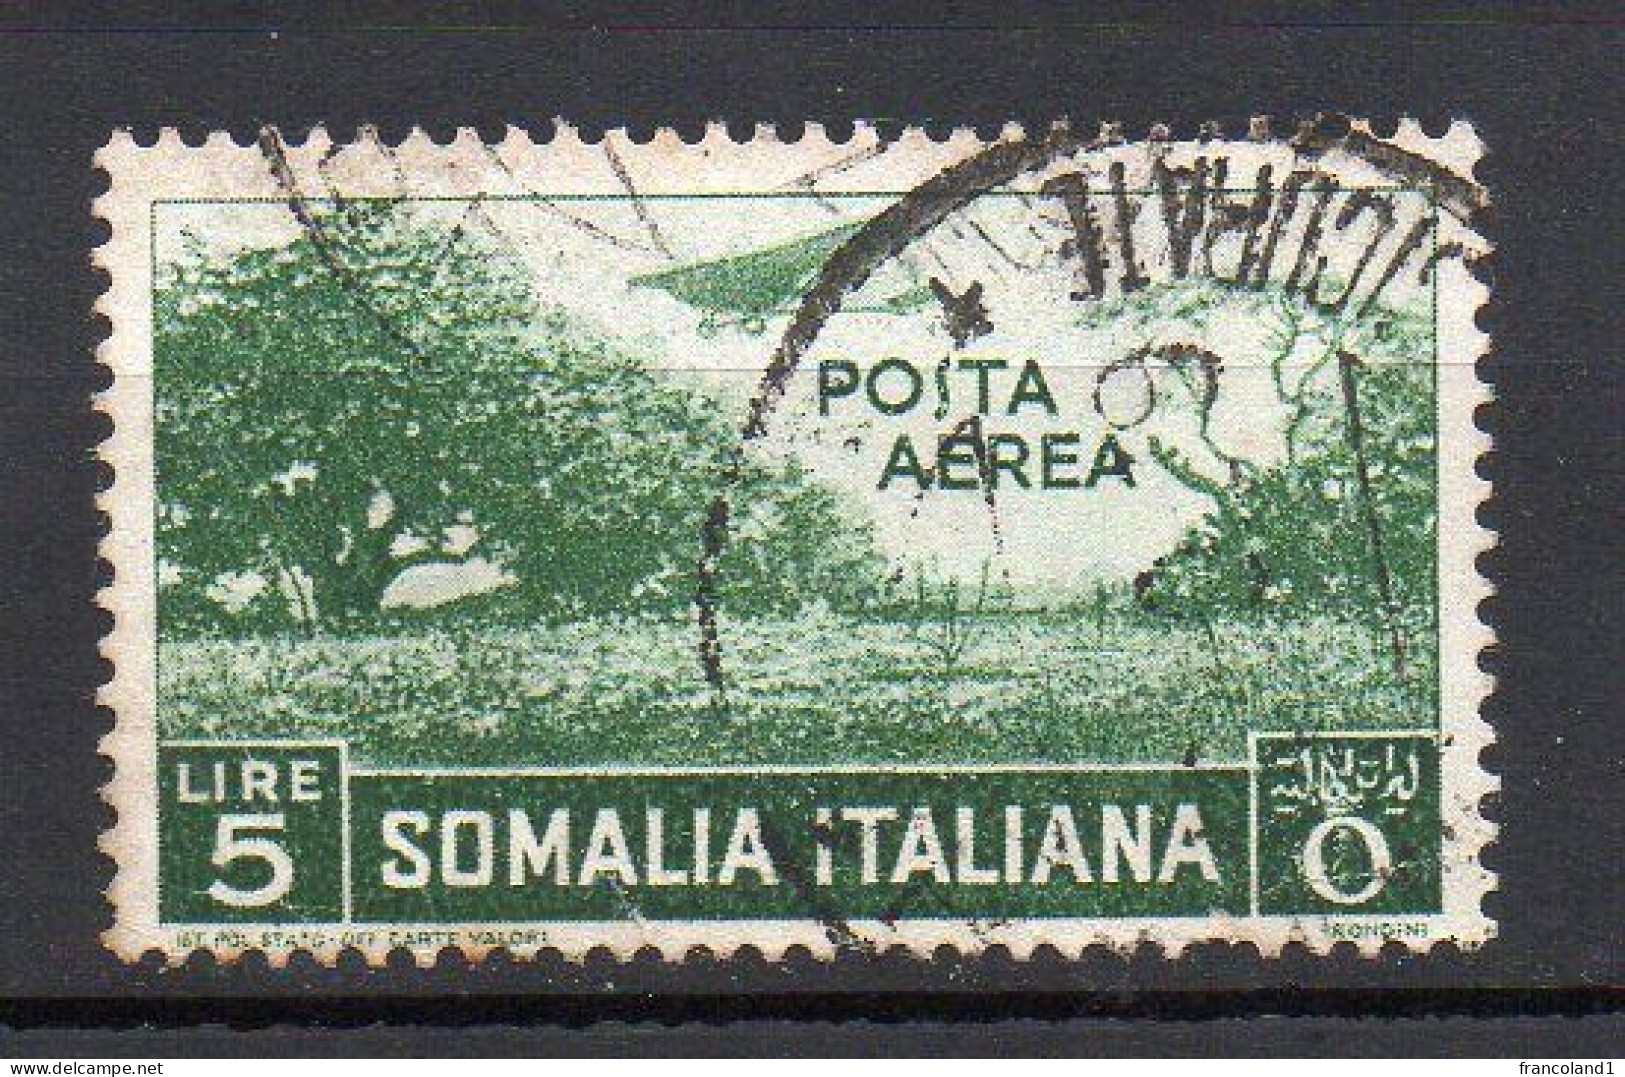 Somalia 1936 Soggetti Africani Posta Aerea N. 25 Timbrato Used - Somalia